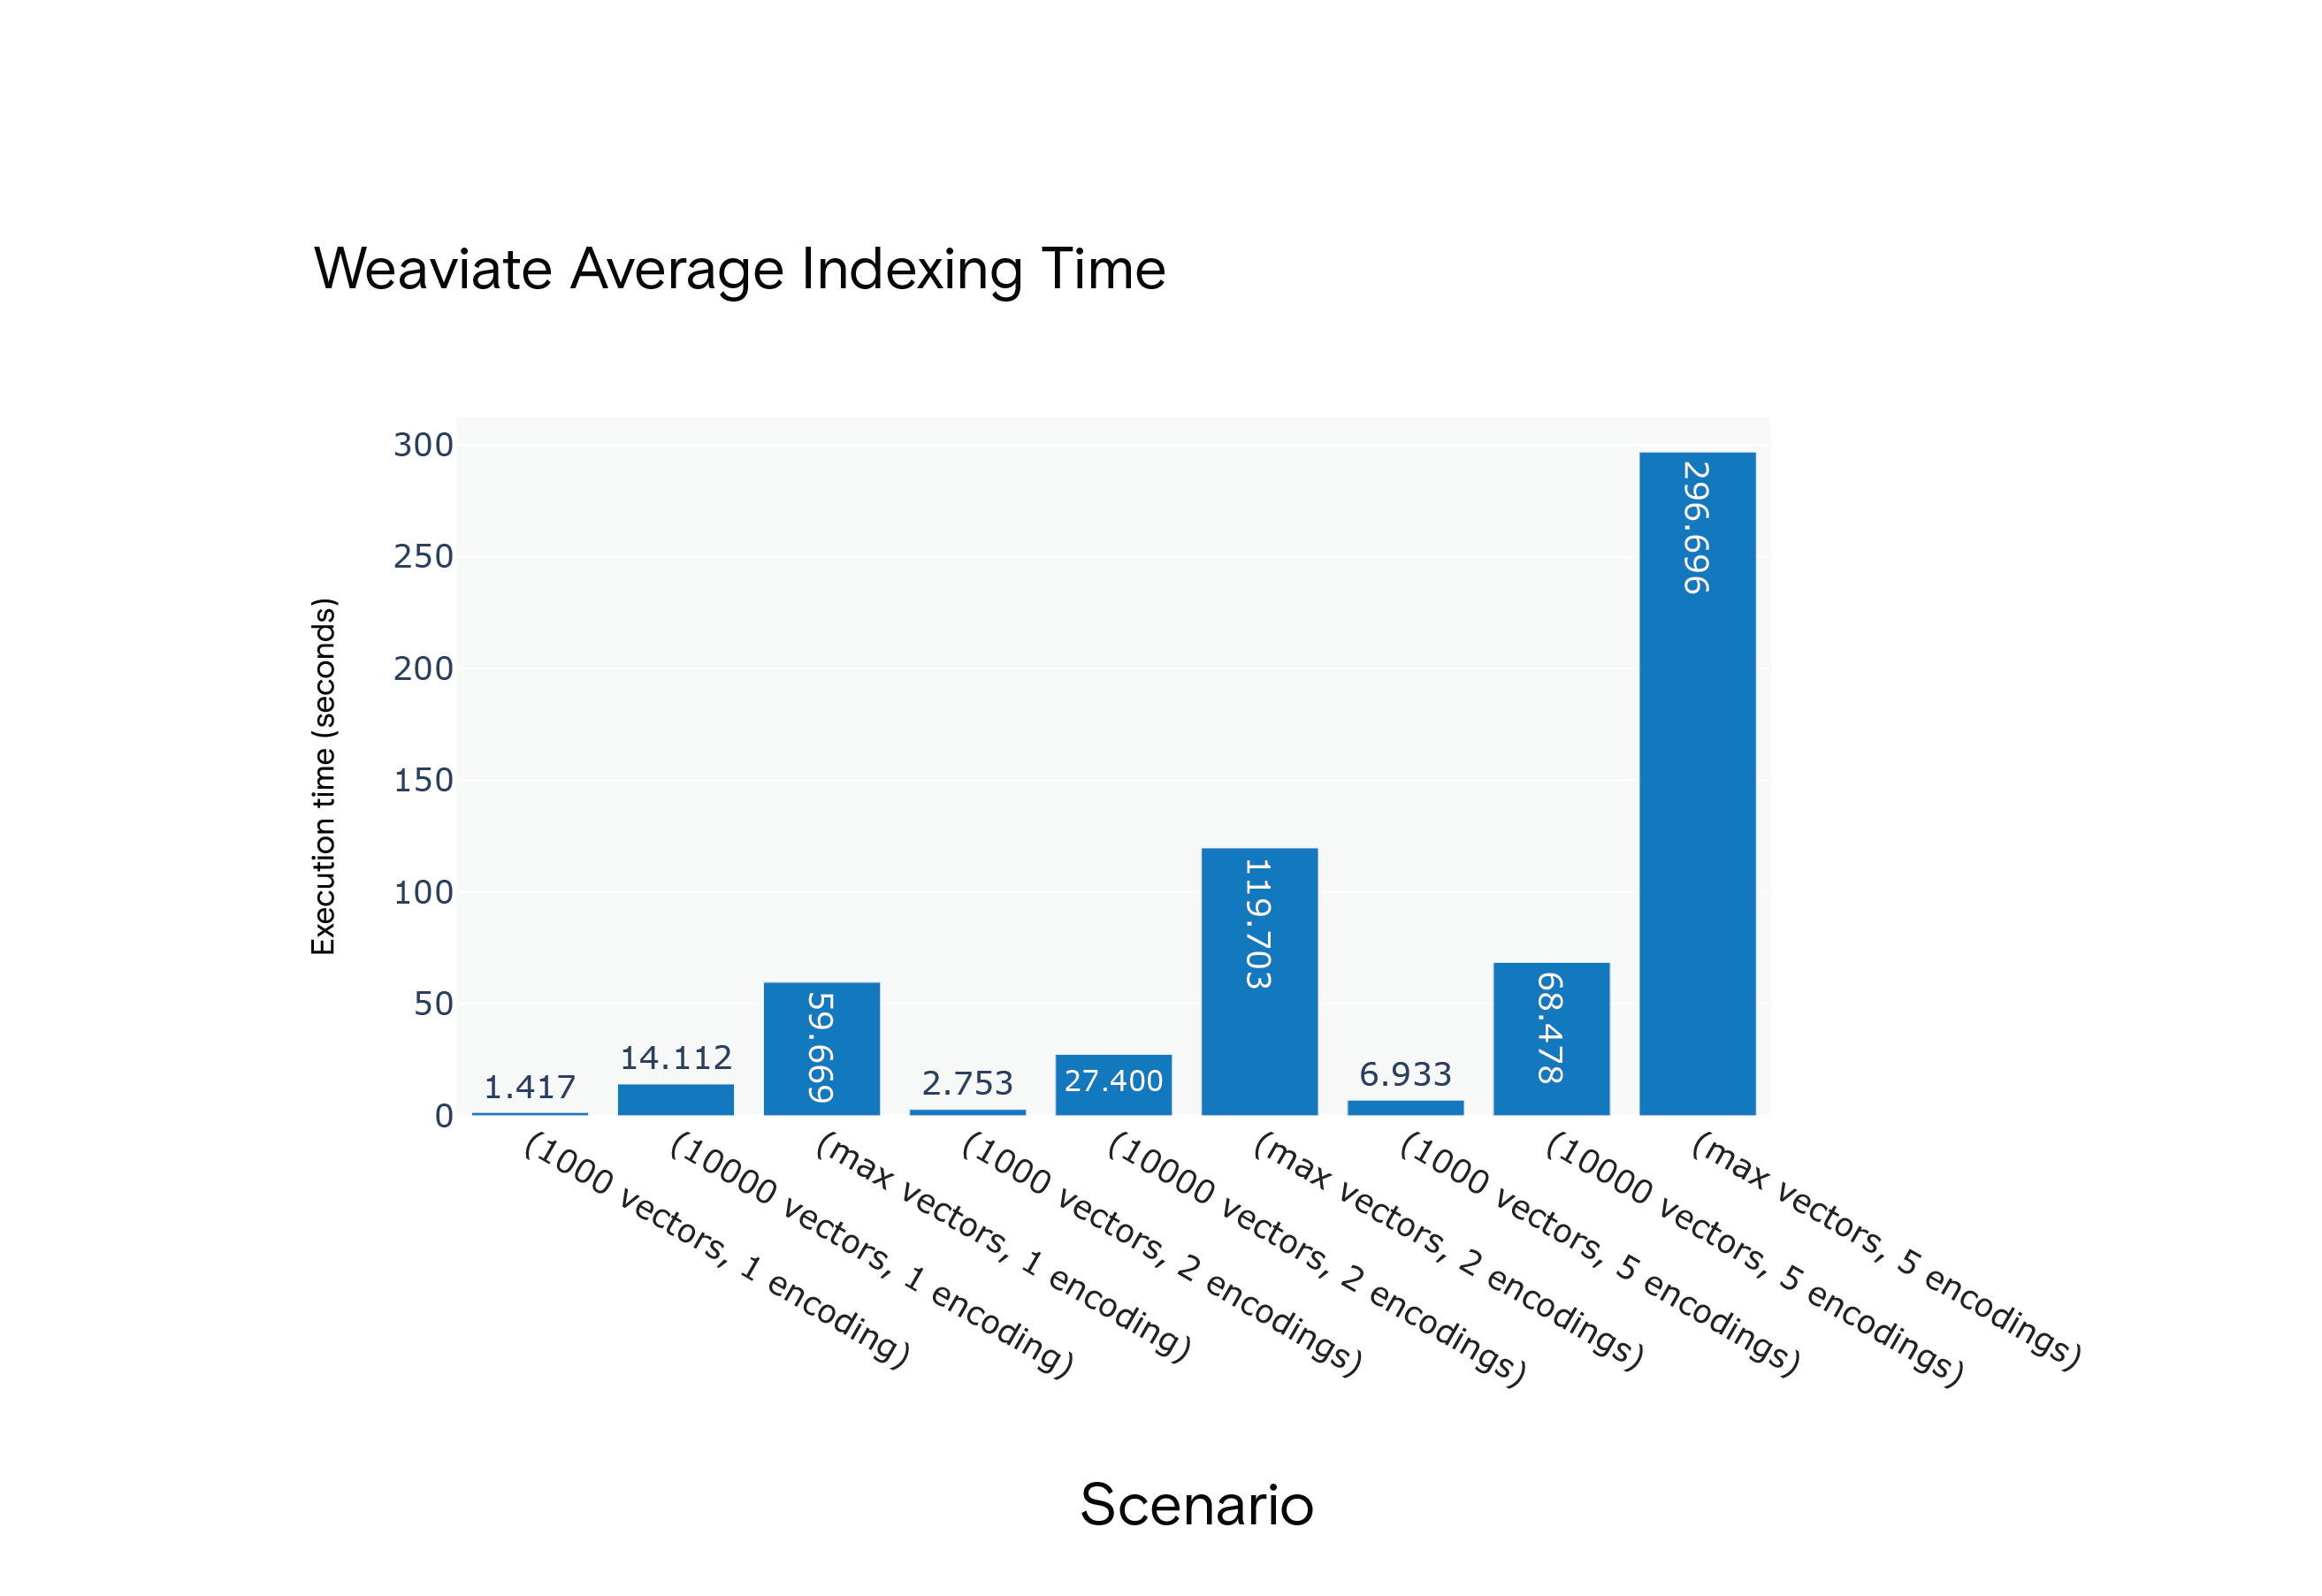 场景 S1 至 S9 下 Weaviate 创建索引所需的平均时间